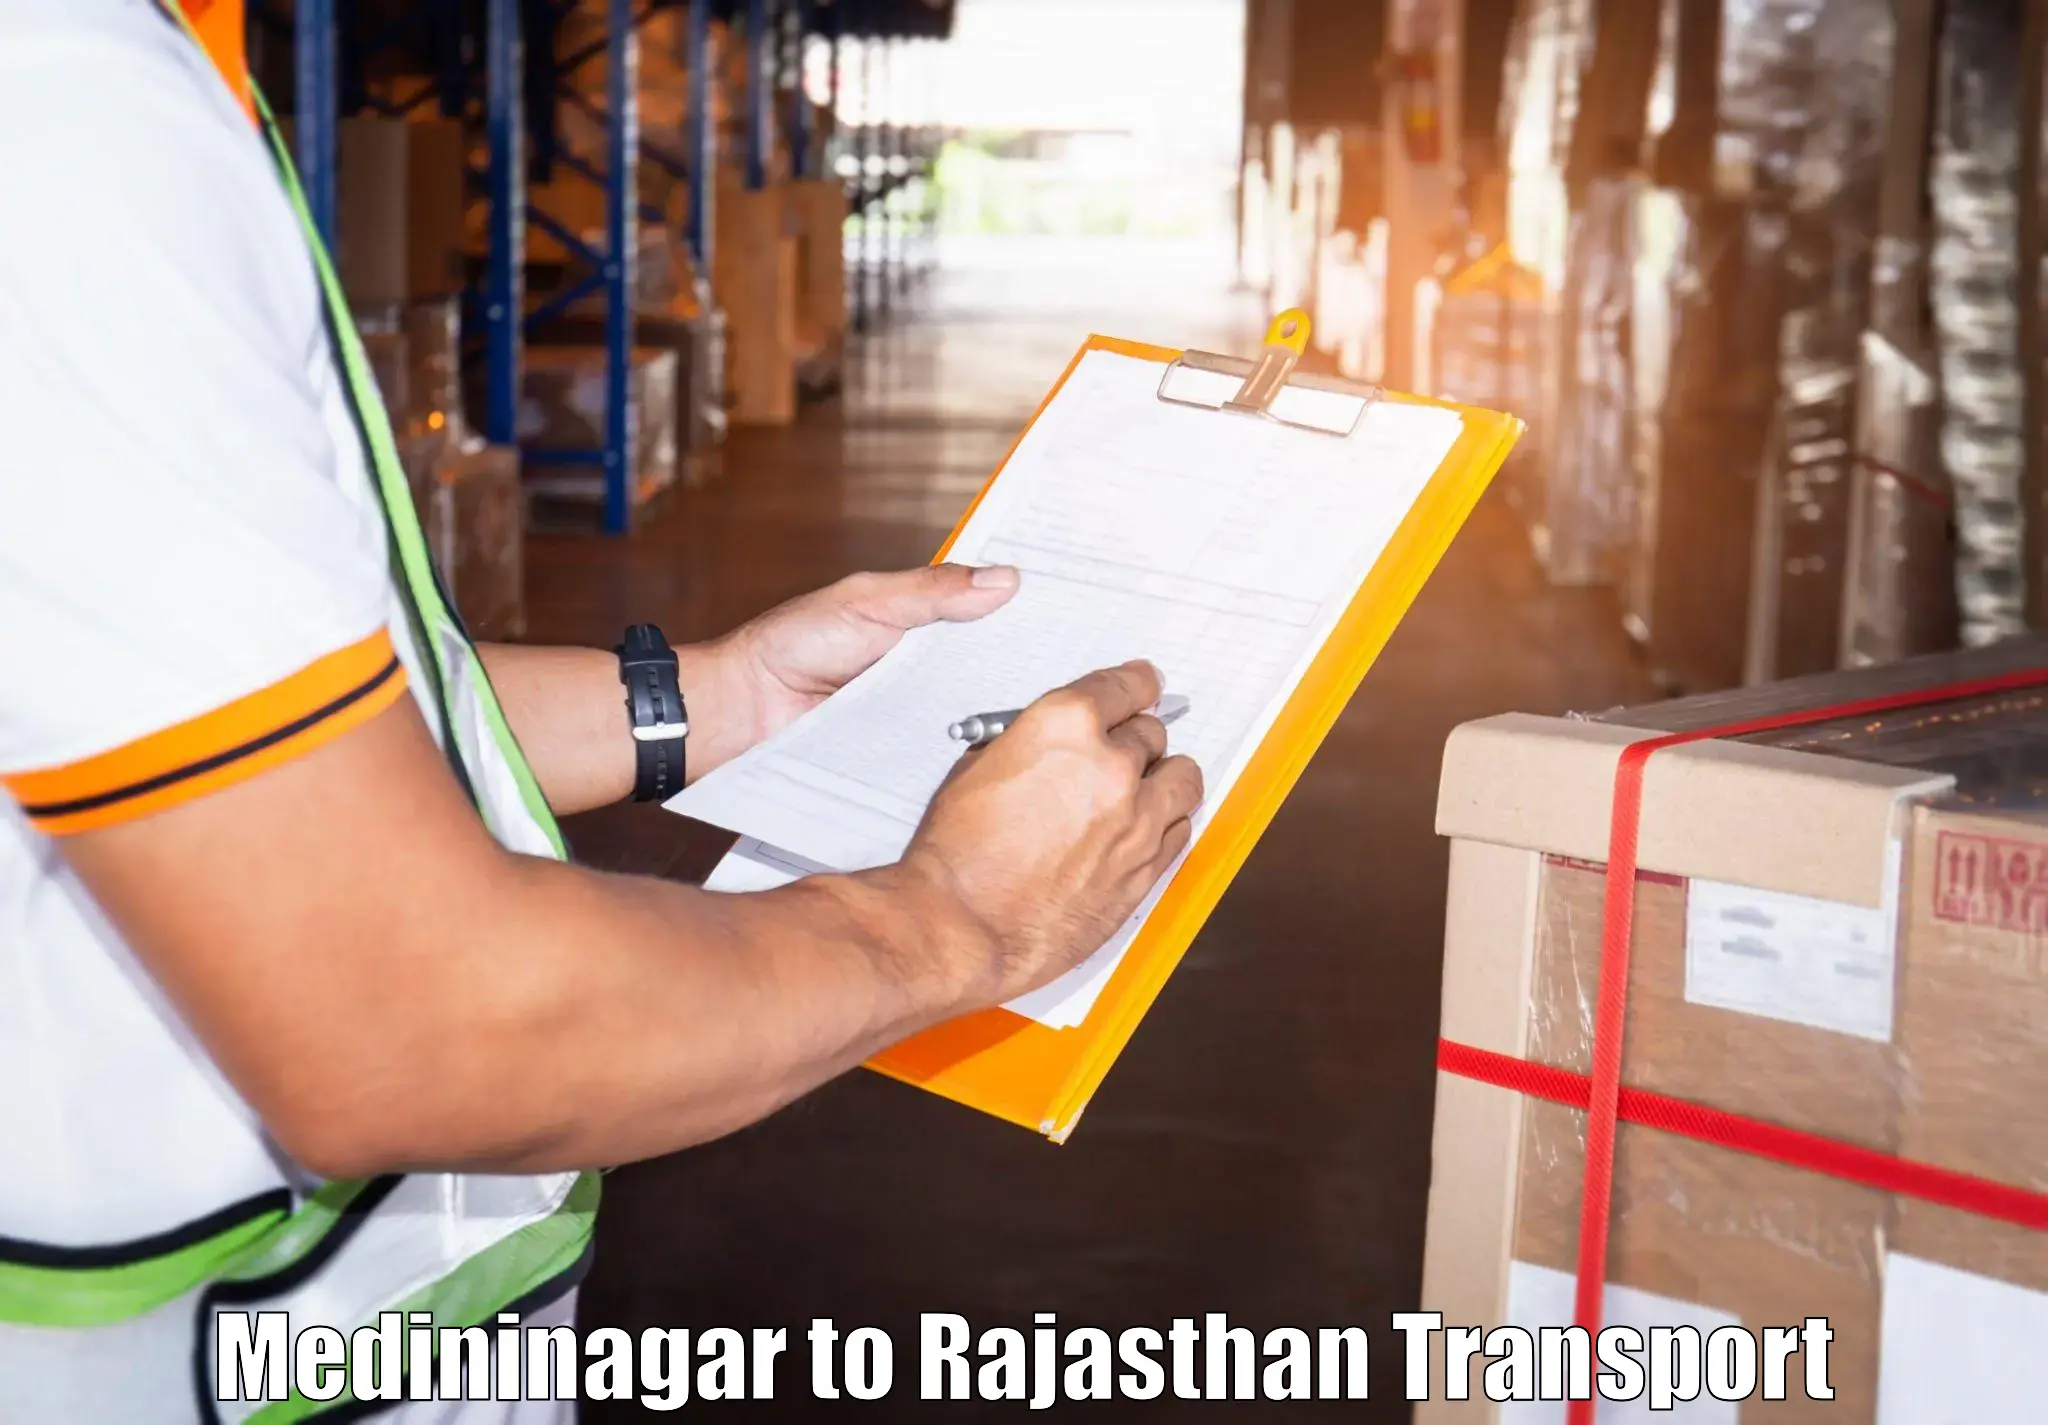 Transport in sharing Medininagar to Mandalgarh